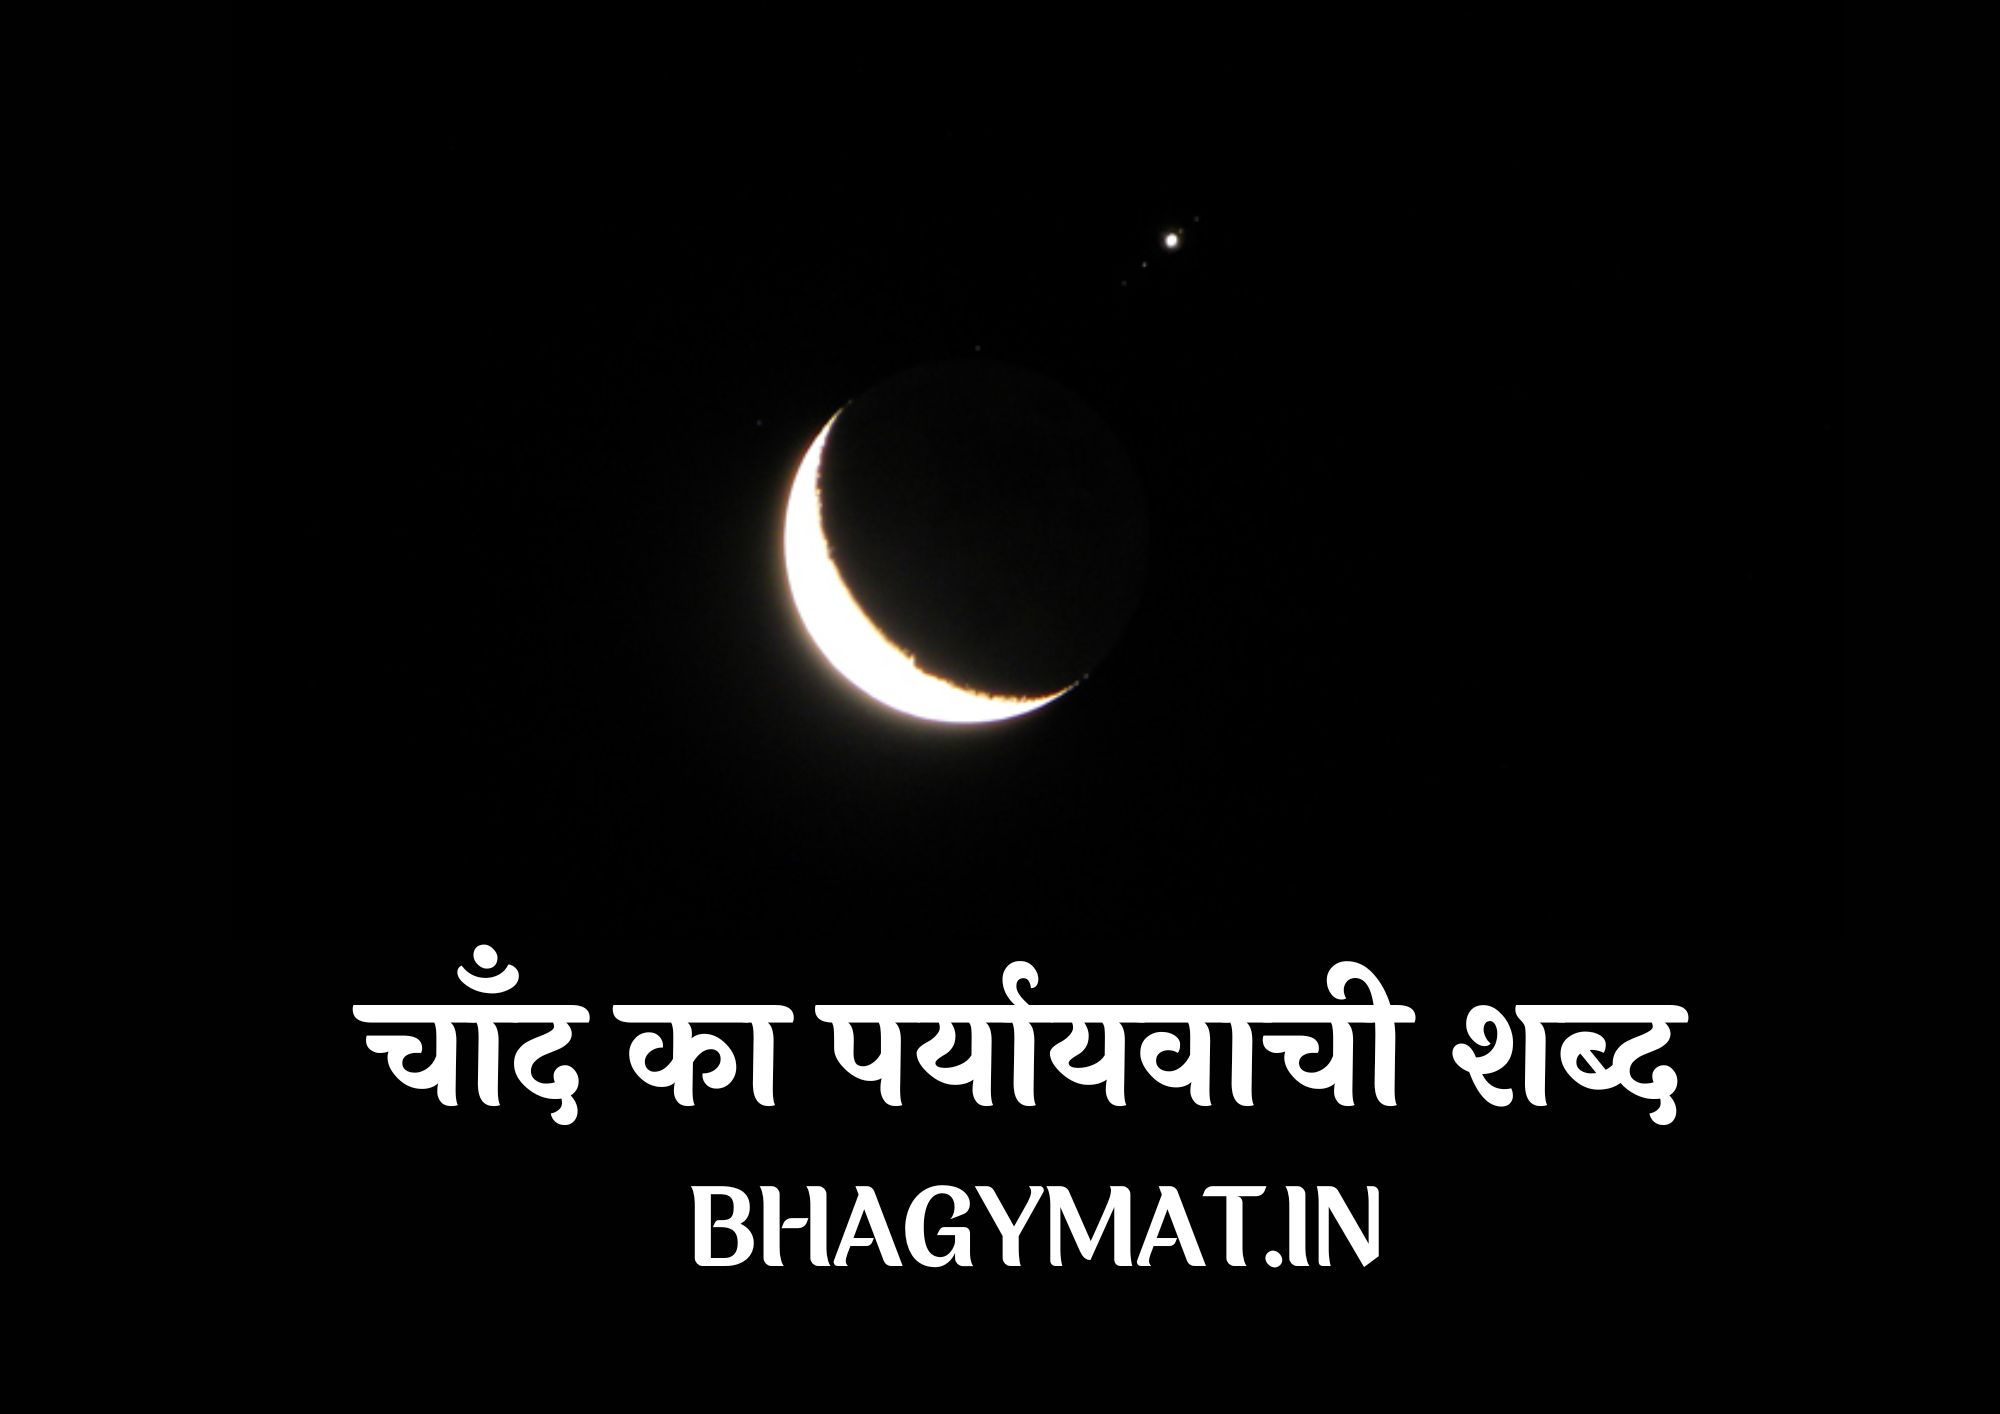 चाँद का पर्यायवाची शब्द क्या है? (Chand Ka Samanarthi Shabd Kya Hai) - Chand Ka Paryayvachi Shabd Kya Hai